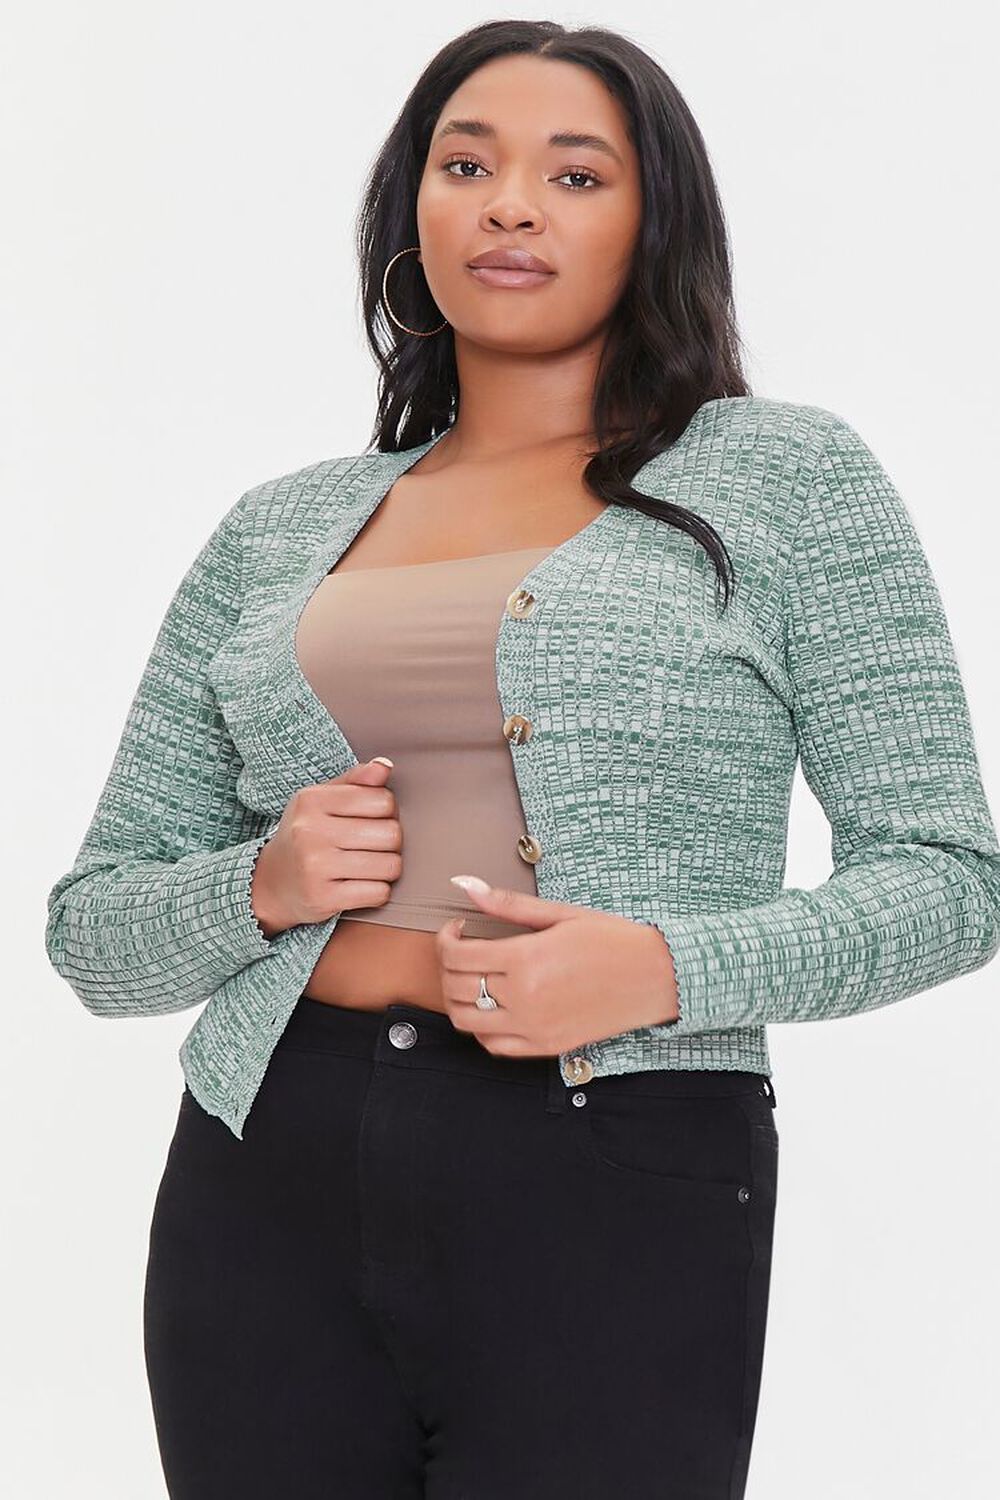 PATINA/CREAM Plus Size Marled Cardigan Sweater, image 1